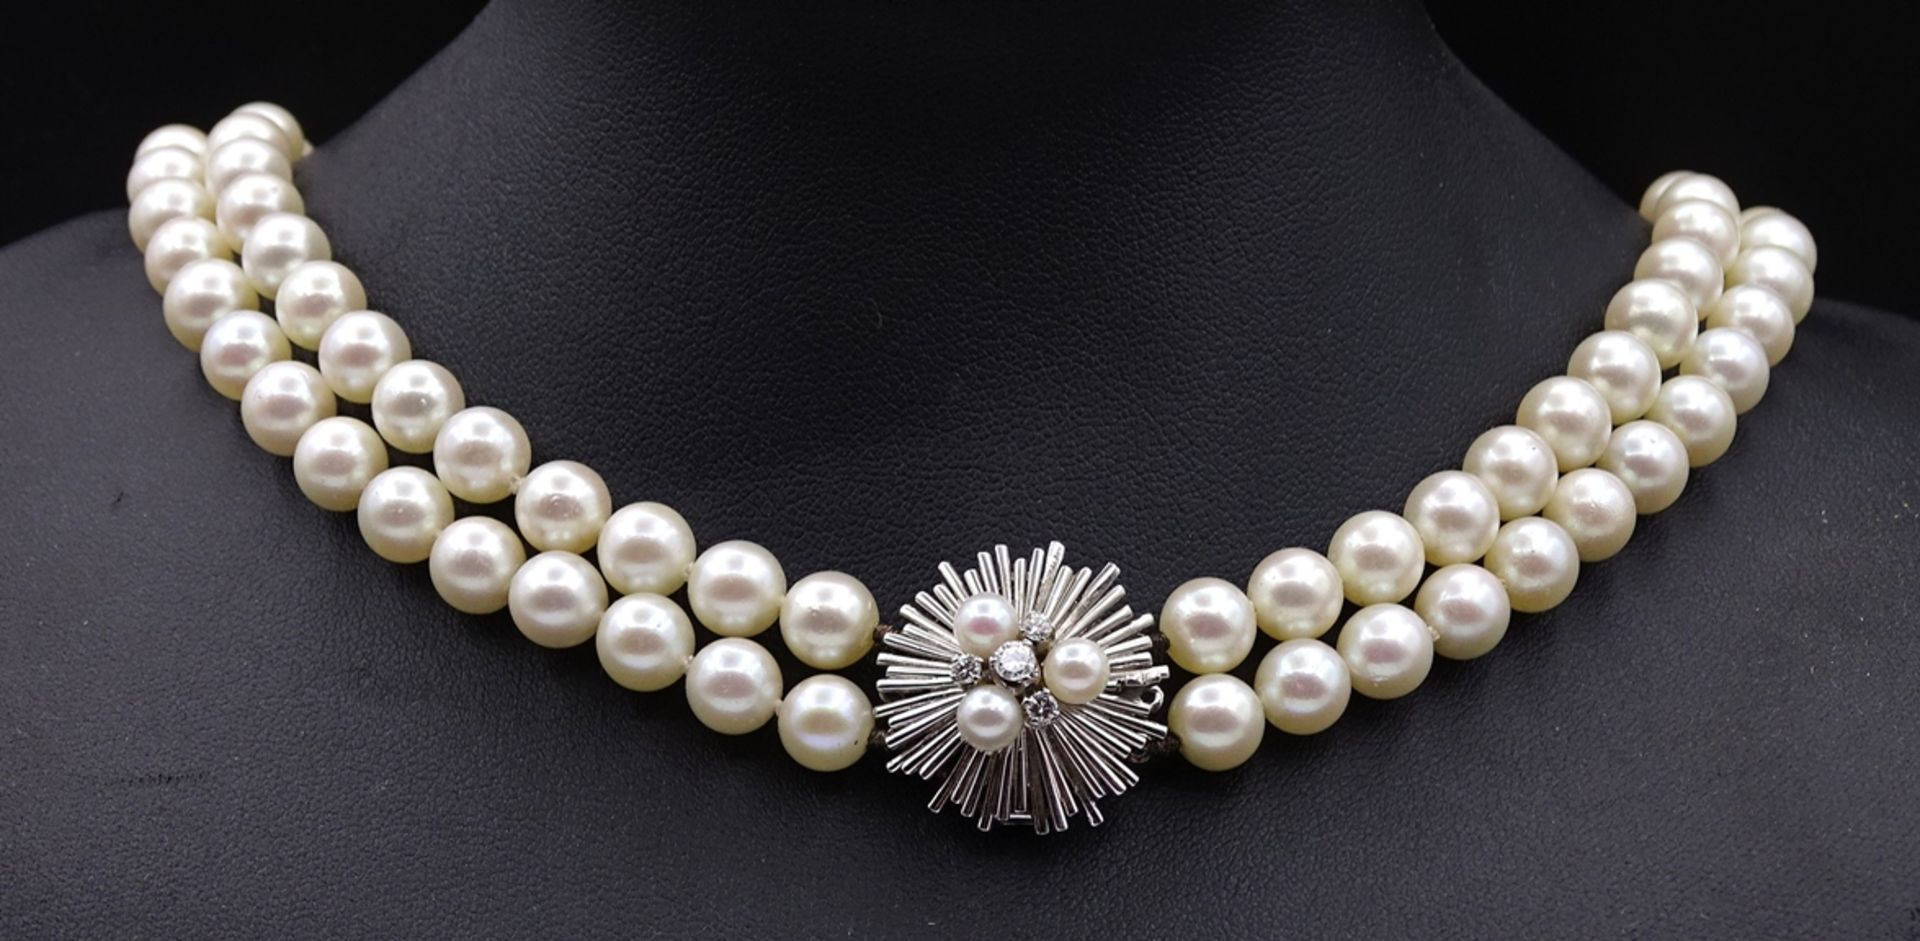 2-reihige Perlen Halskette mit Weißgoldverschluss 750/000, Verschluss mit 3 Perlen und 4 Brillanten